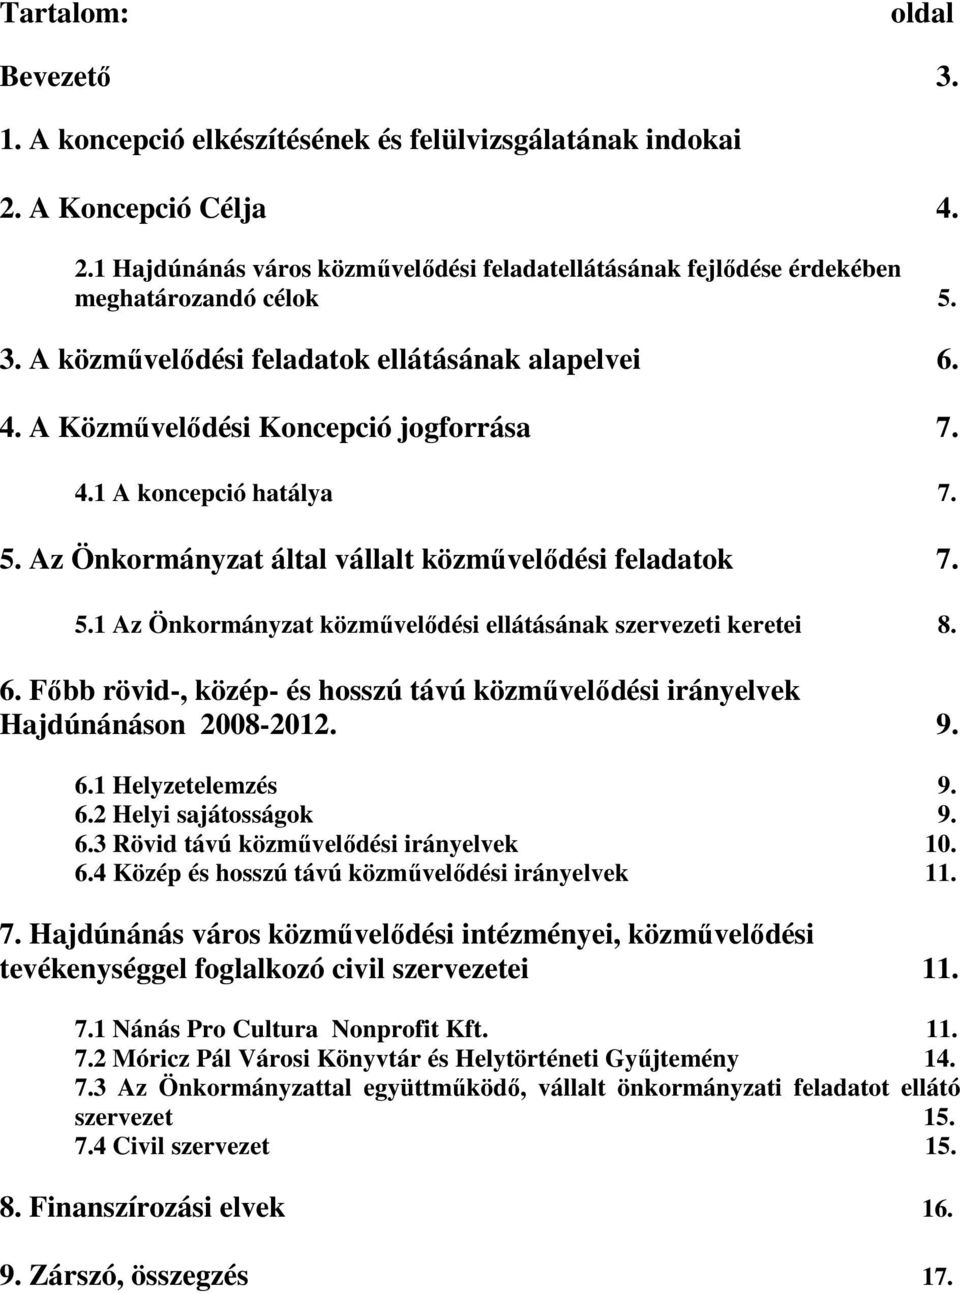 6. Fıbb rövid-, közép- és hosszú távú közmővelıdési irányelvek Hajdúnánáson 2008-2012. 9. 6.1 Helyzetelemzés 9. 6.2 Helyi sajátosságok 9. 6.3 Rövid távú közmővelıdési irányelvek 10. 6.4 Közép és hosszú távú közmővelıdési irányelvek 11.